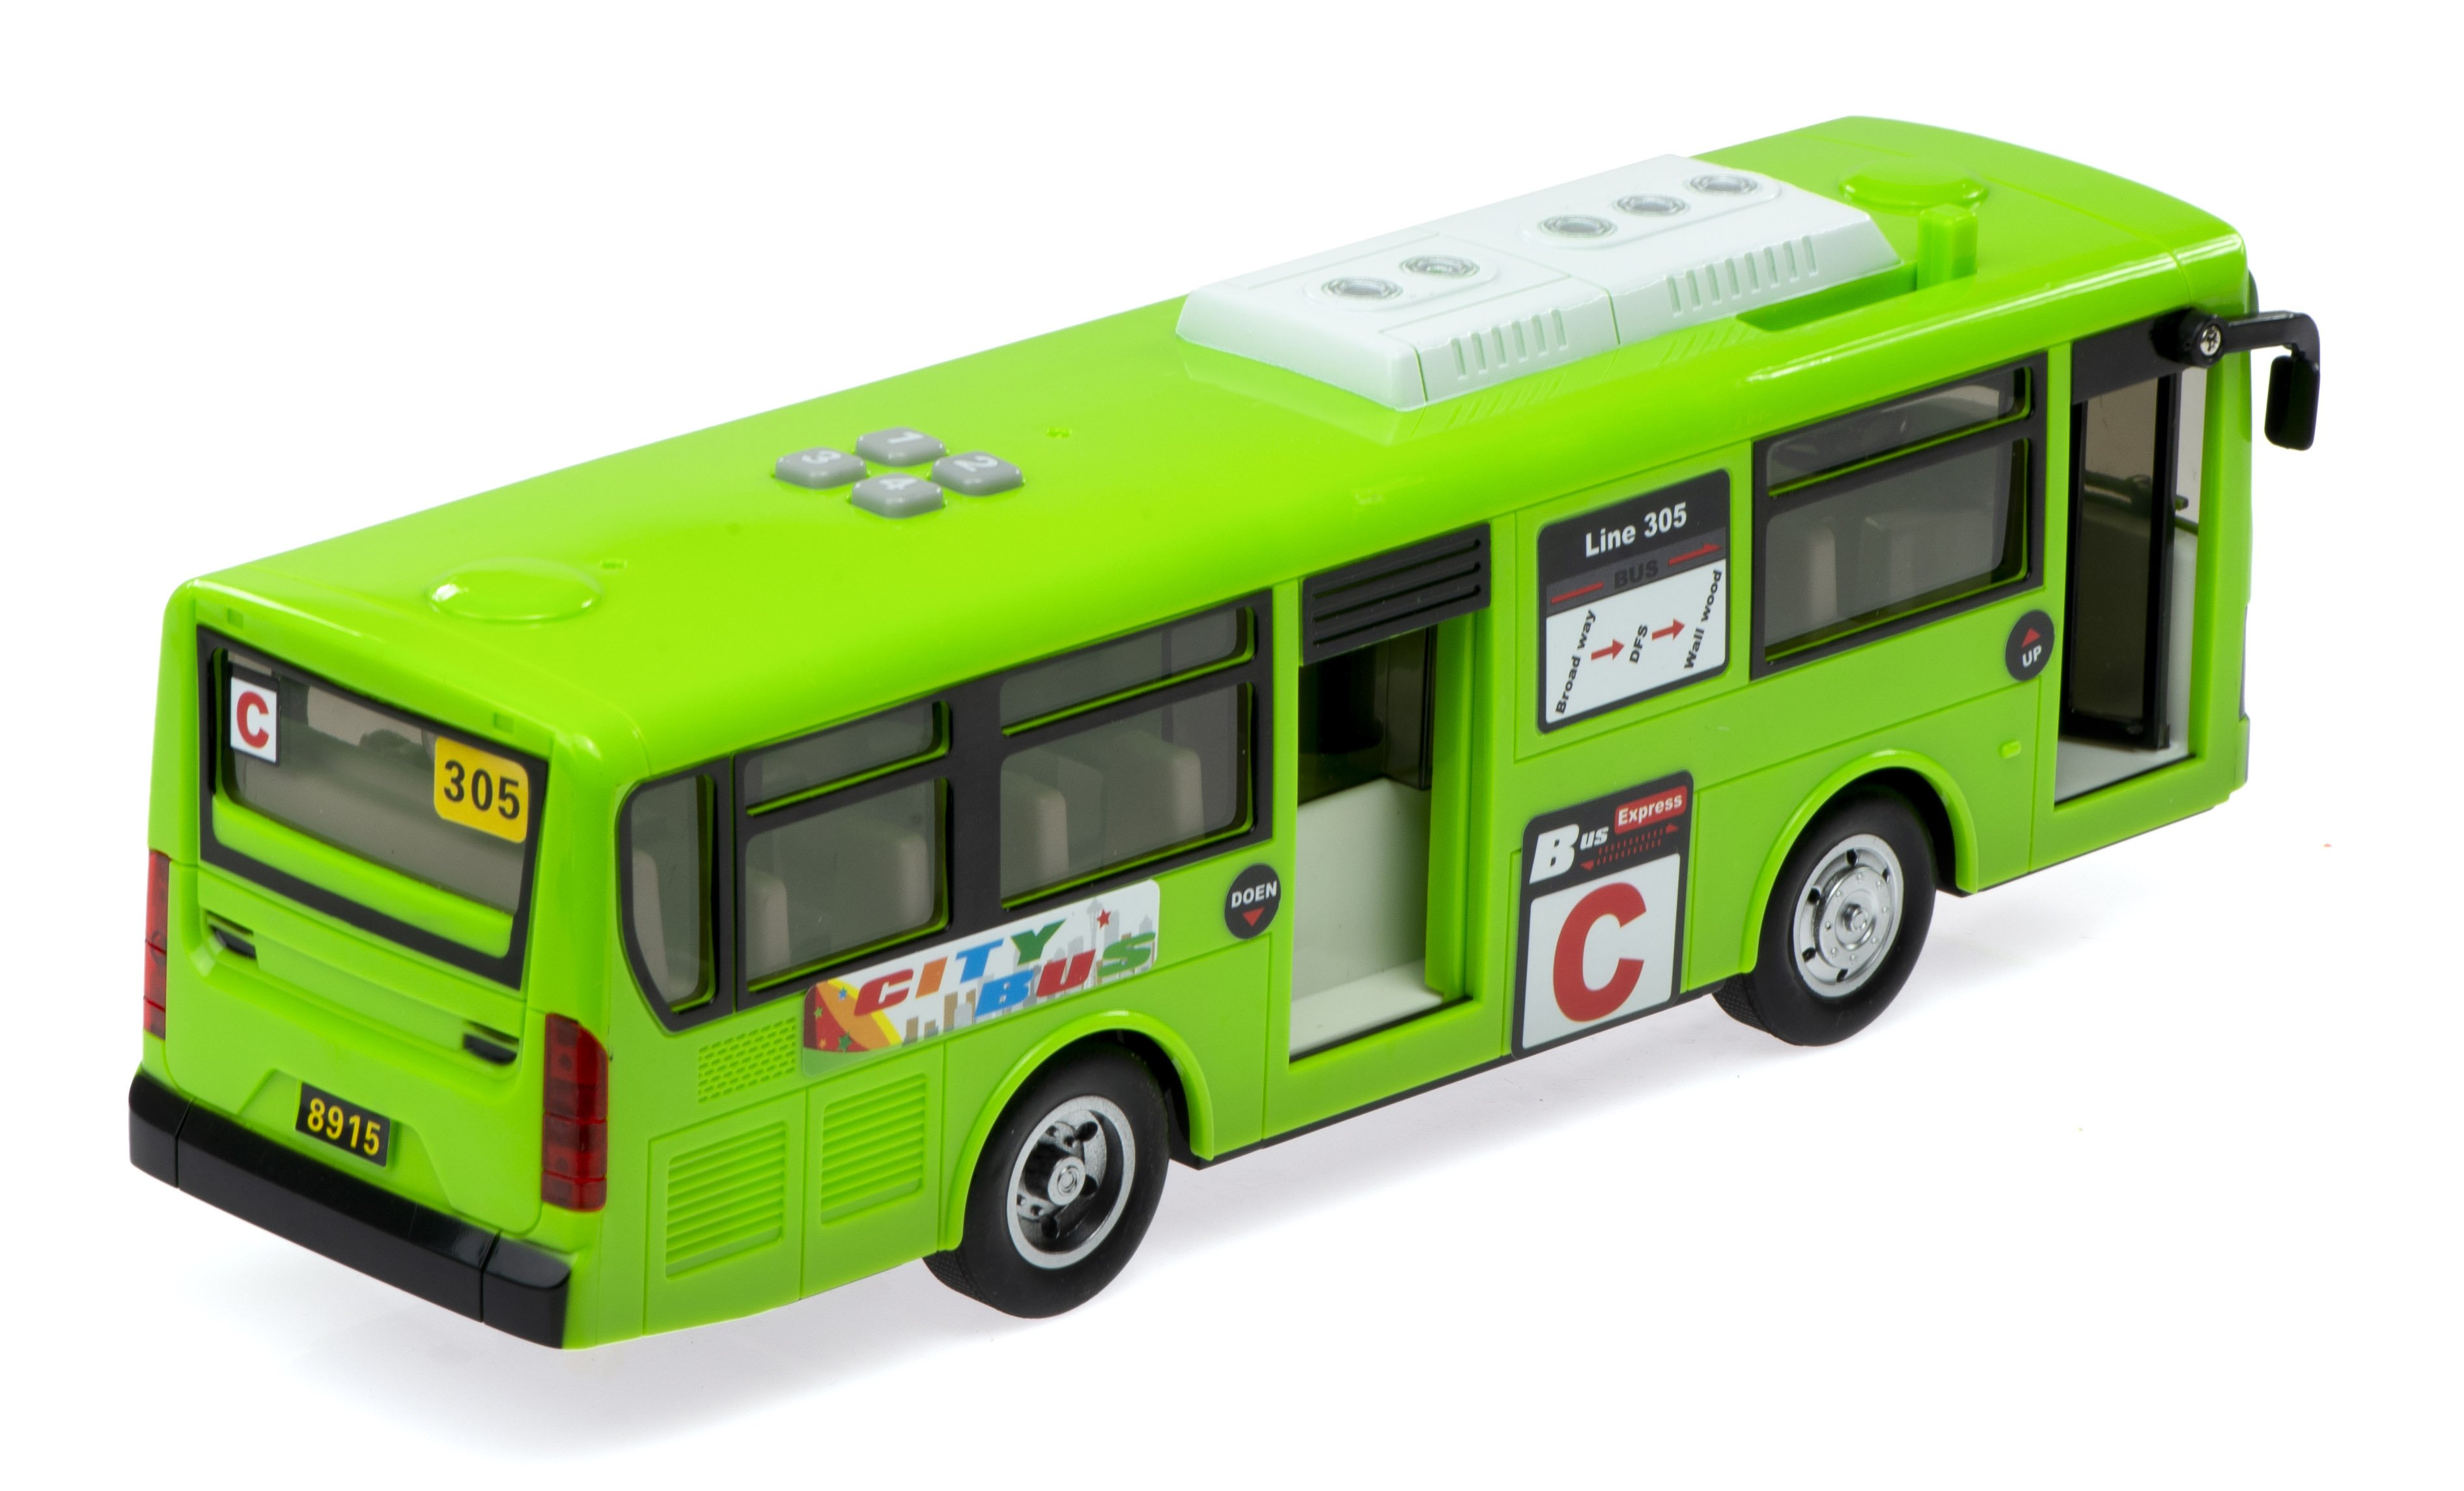 Детский автобус для детей. Детские автобусы. Автобус игрушечный. Игрушка школьный автобус. Зеленый автобус игрушка.